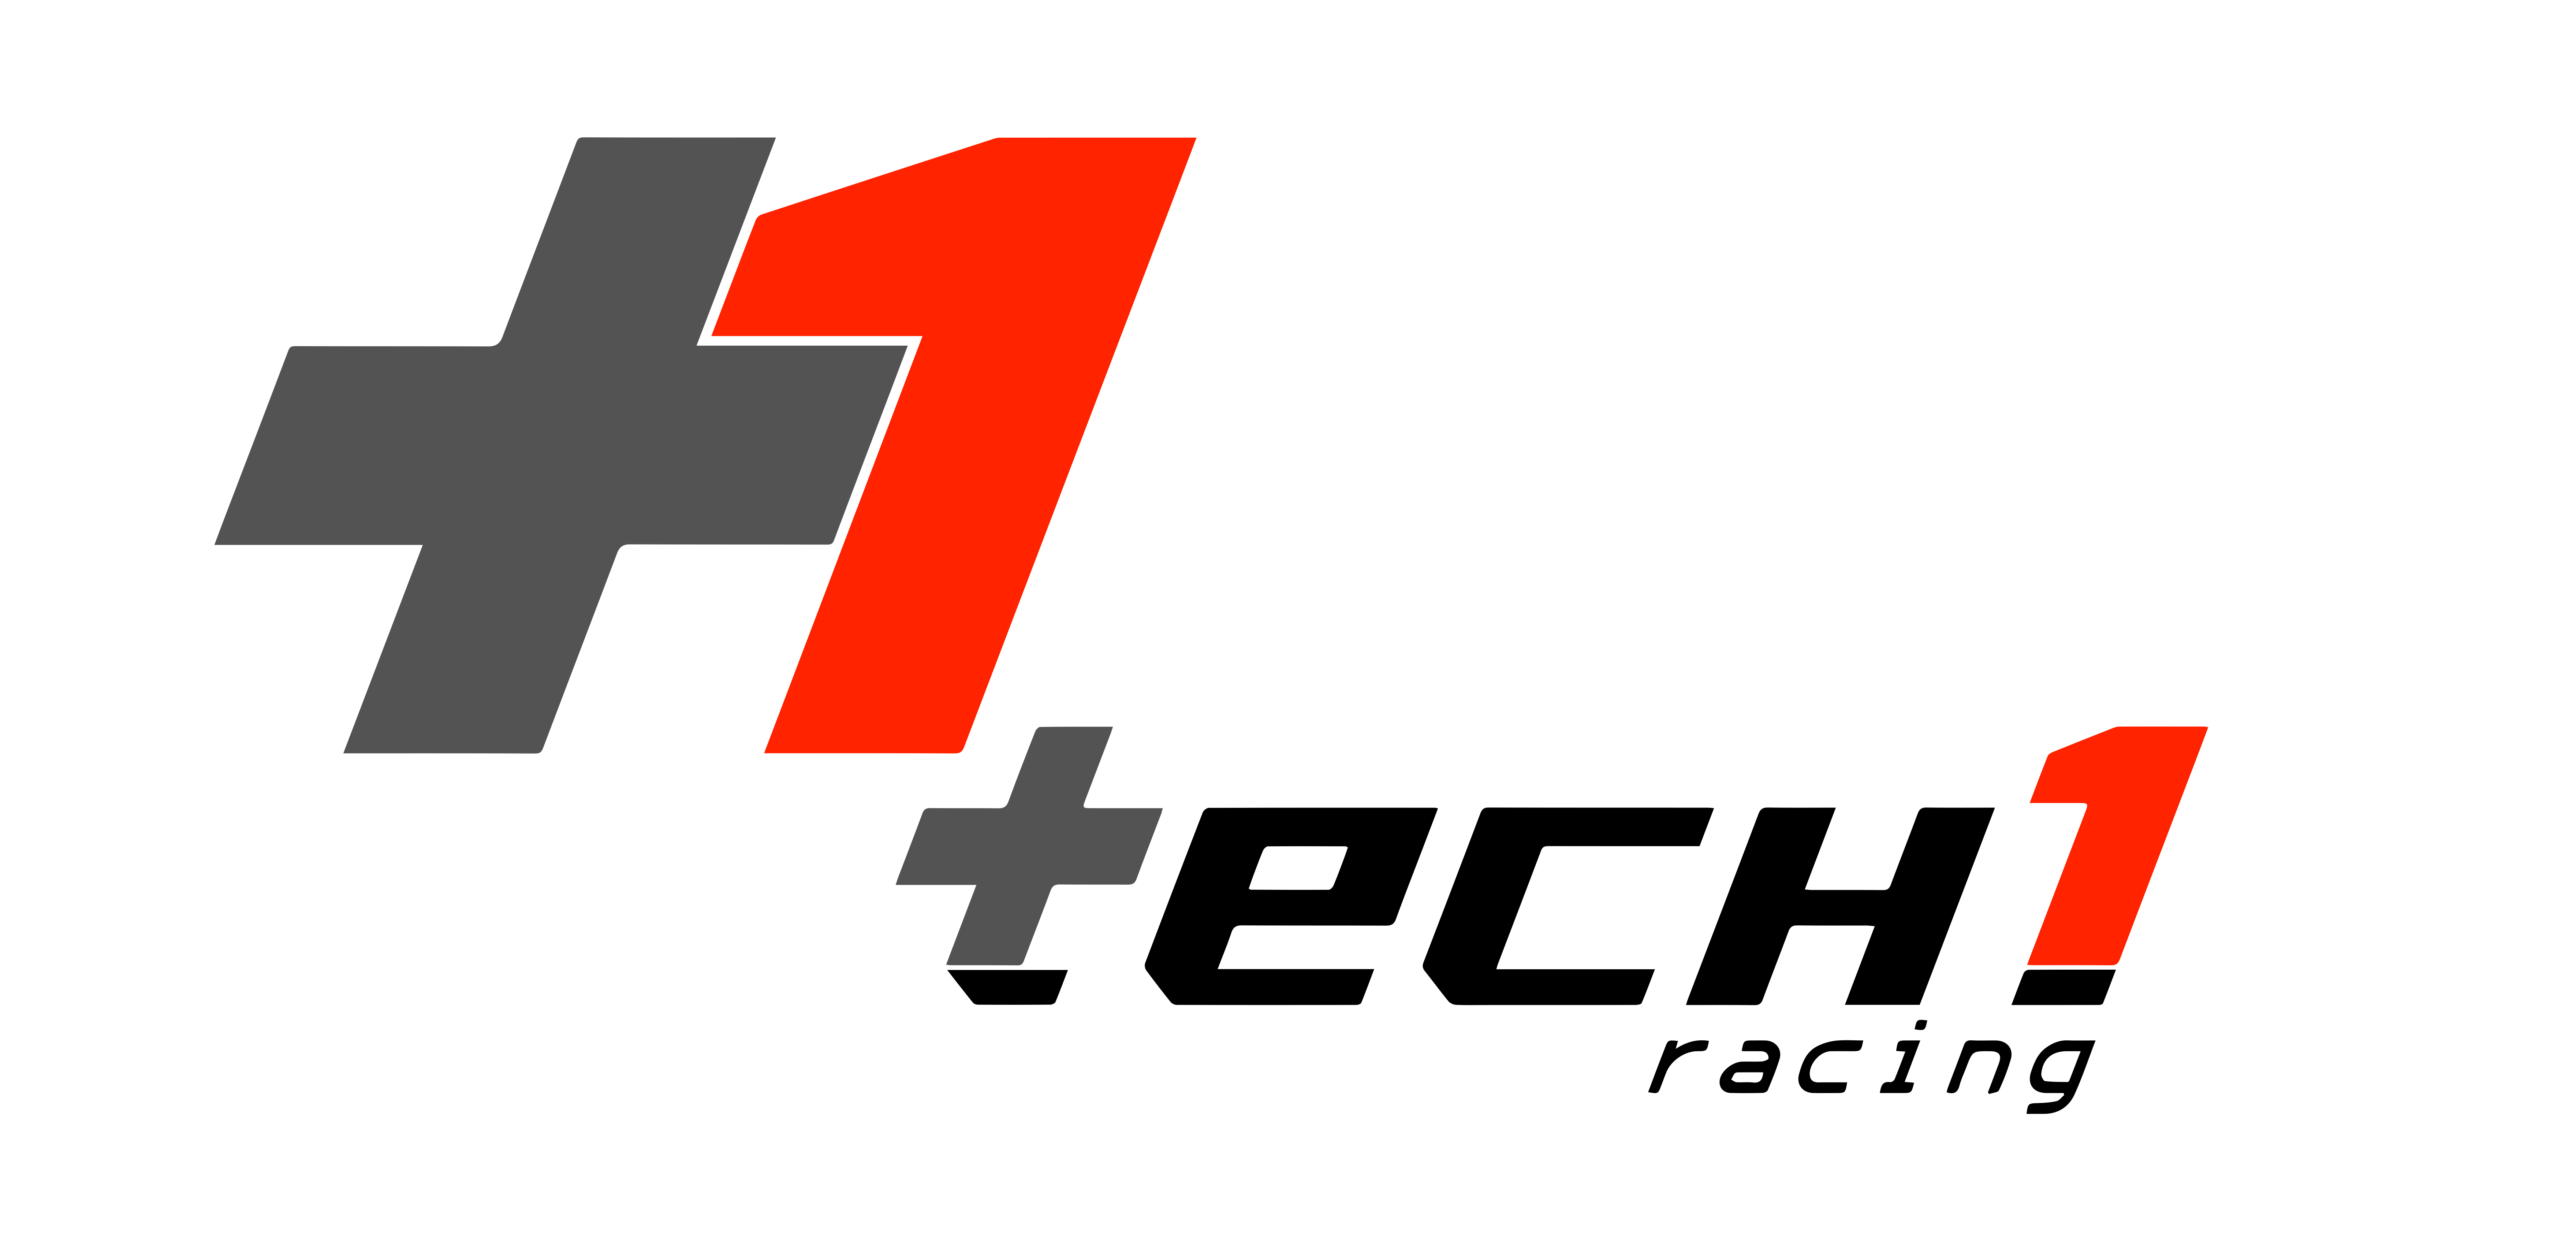 Racing Tech. Tech1 Racing logo. Tr-Ch-1. Racing Hart logo.